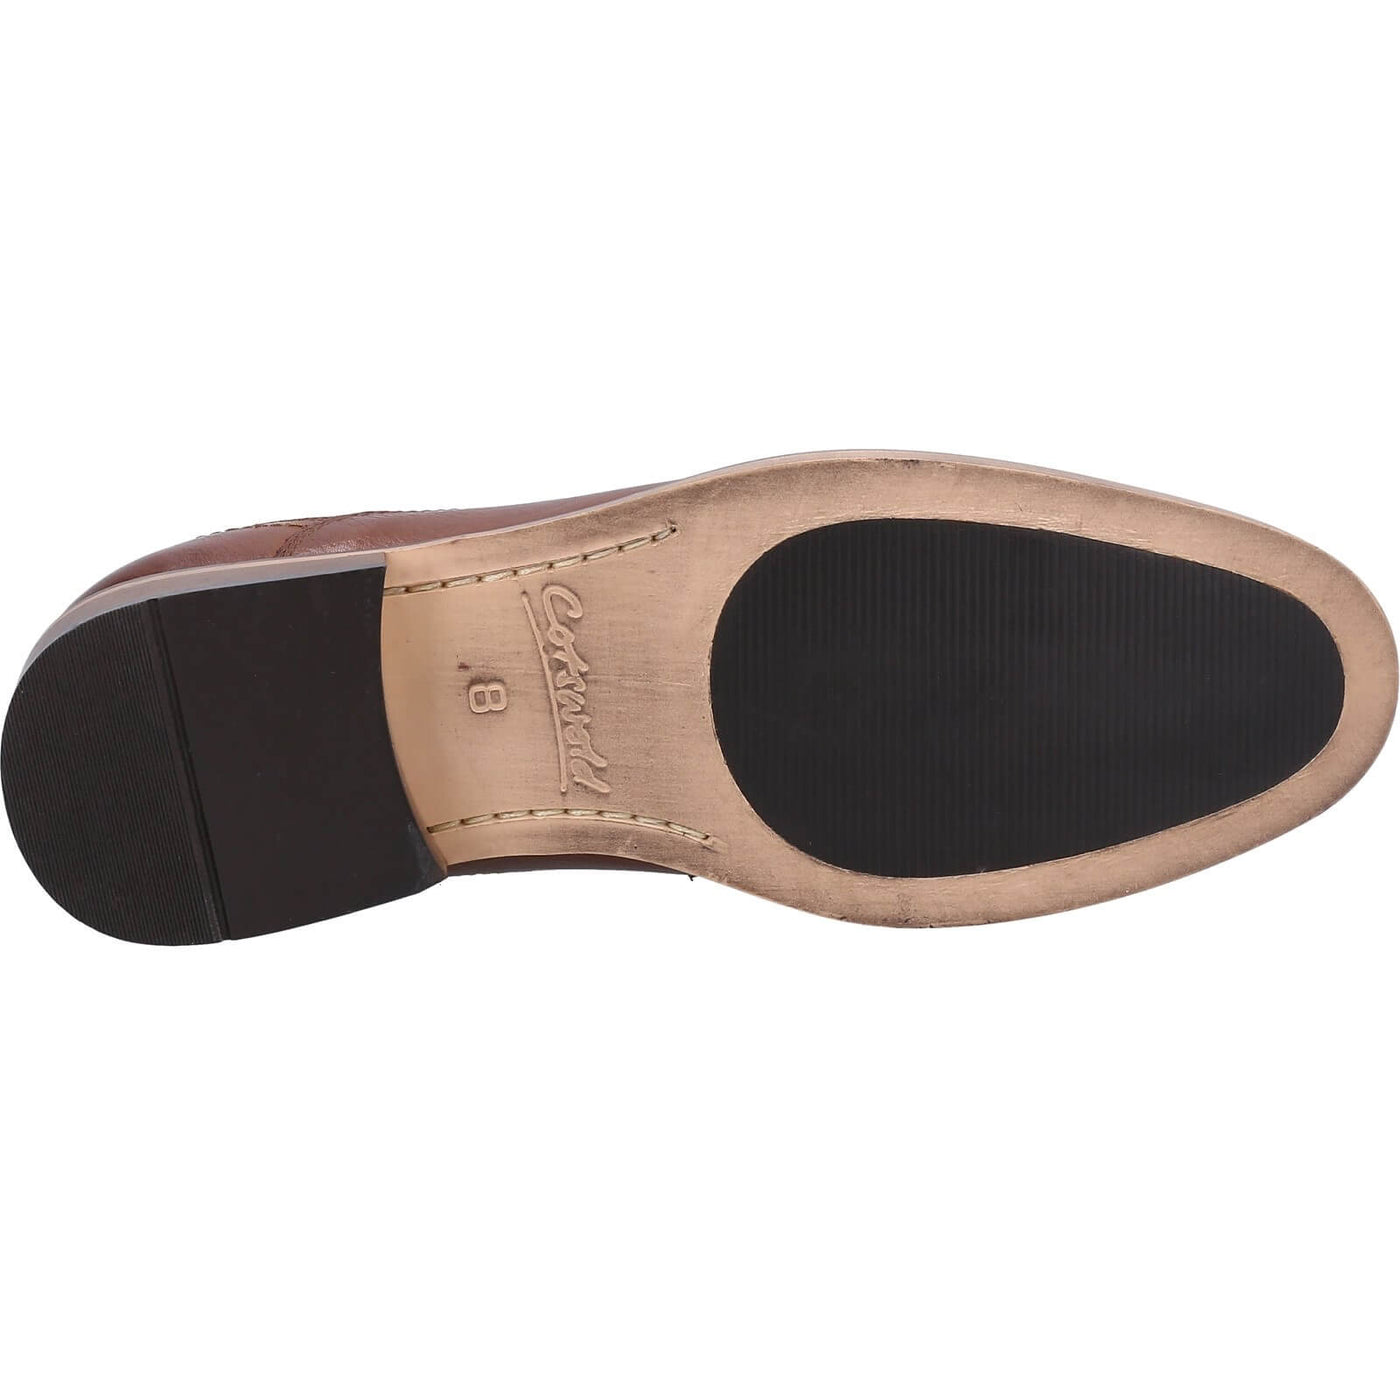 Cotswold Edge Brogue Shoes Tan 3#colour_tan-brown